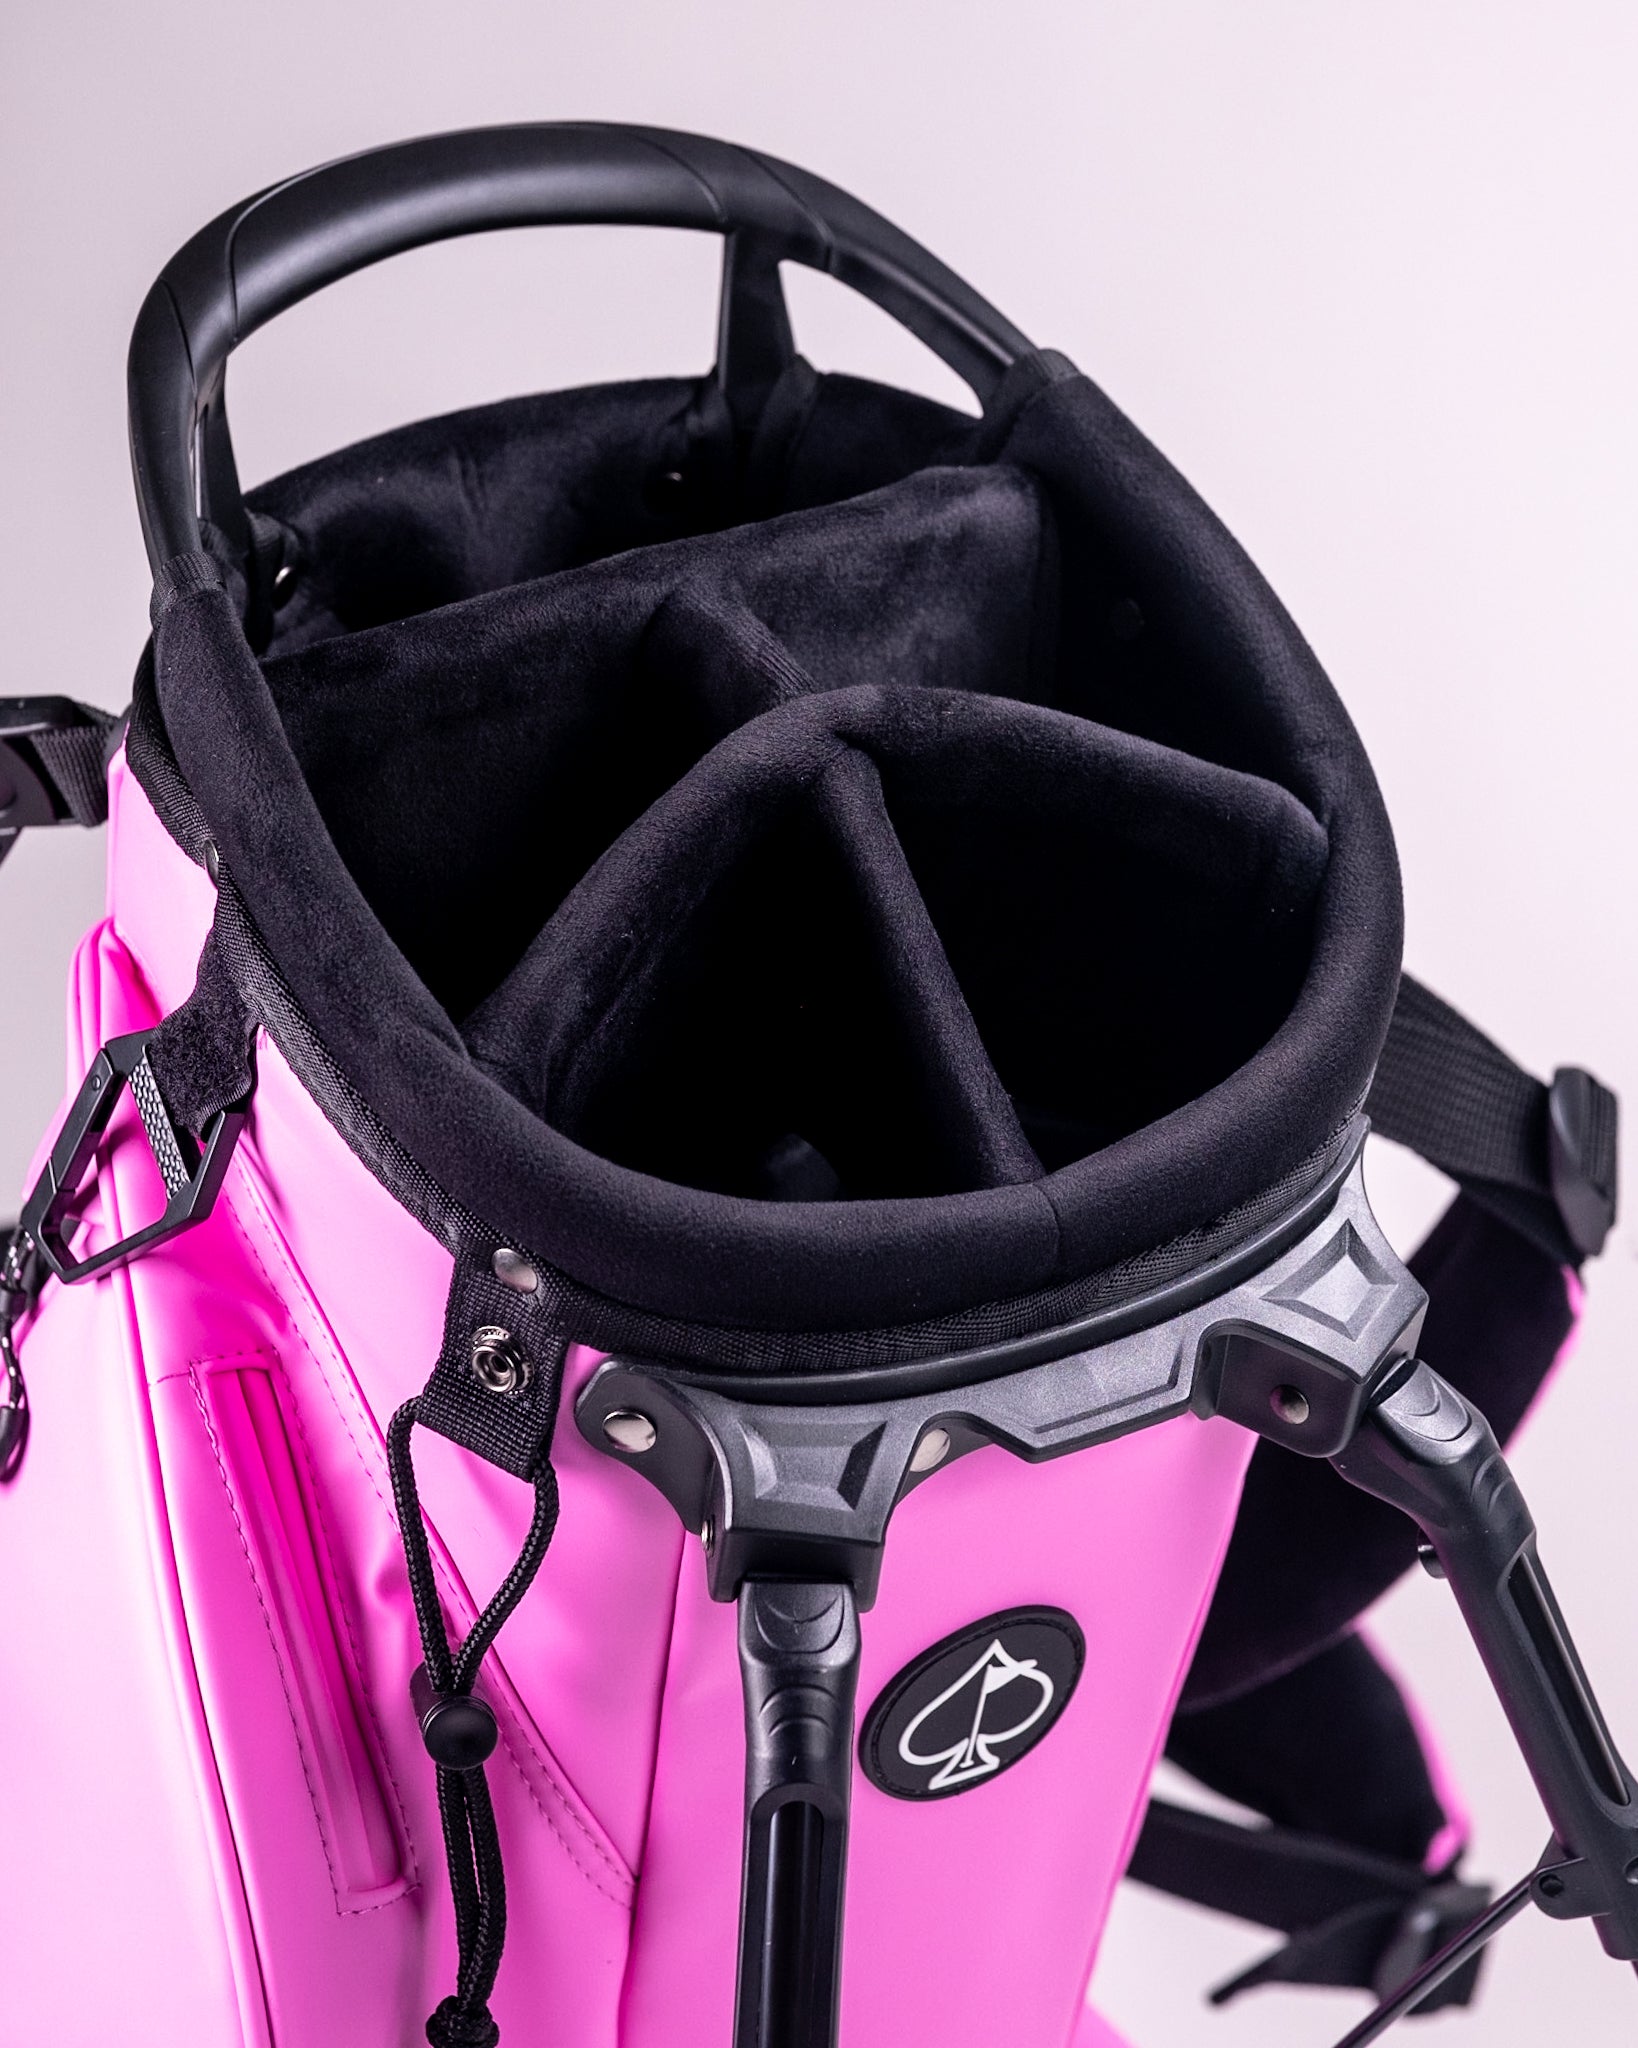 Player Preferred™ Golf Bag - Bubblegum